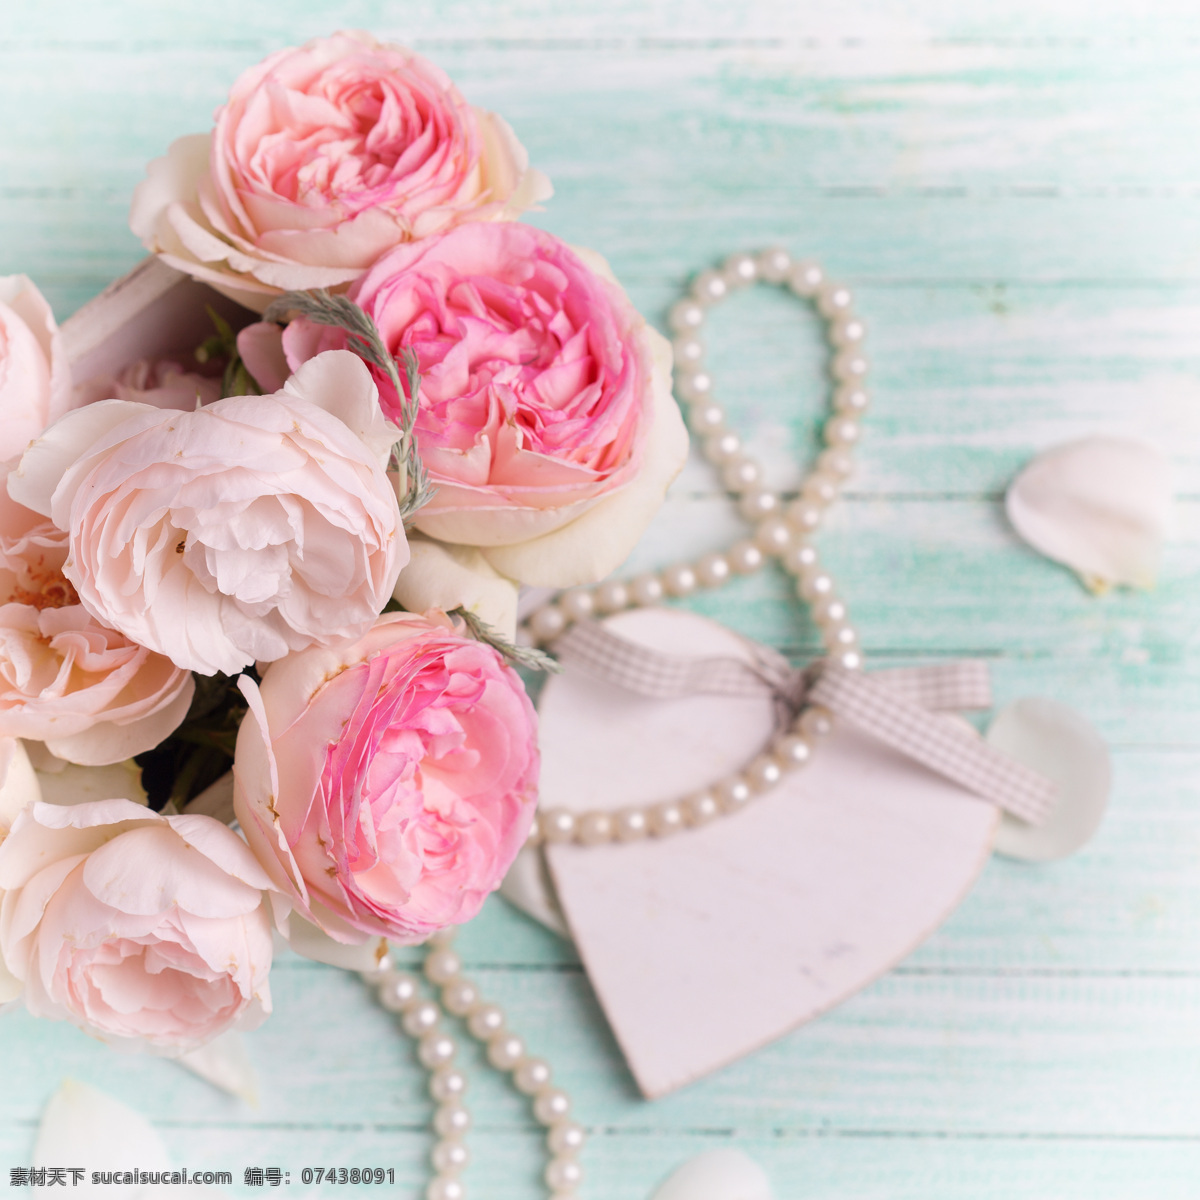 美丽 鲜花 珍珠 项链 珍珠项链 花卉 花朵 美丽花朵 爱心 桃心 婚礼主题 其他类别 生活百科